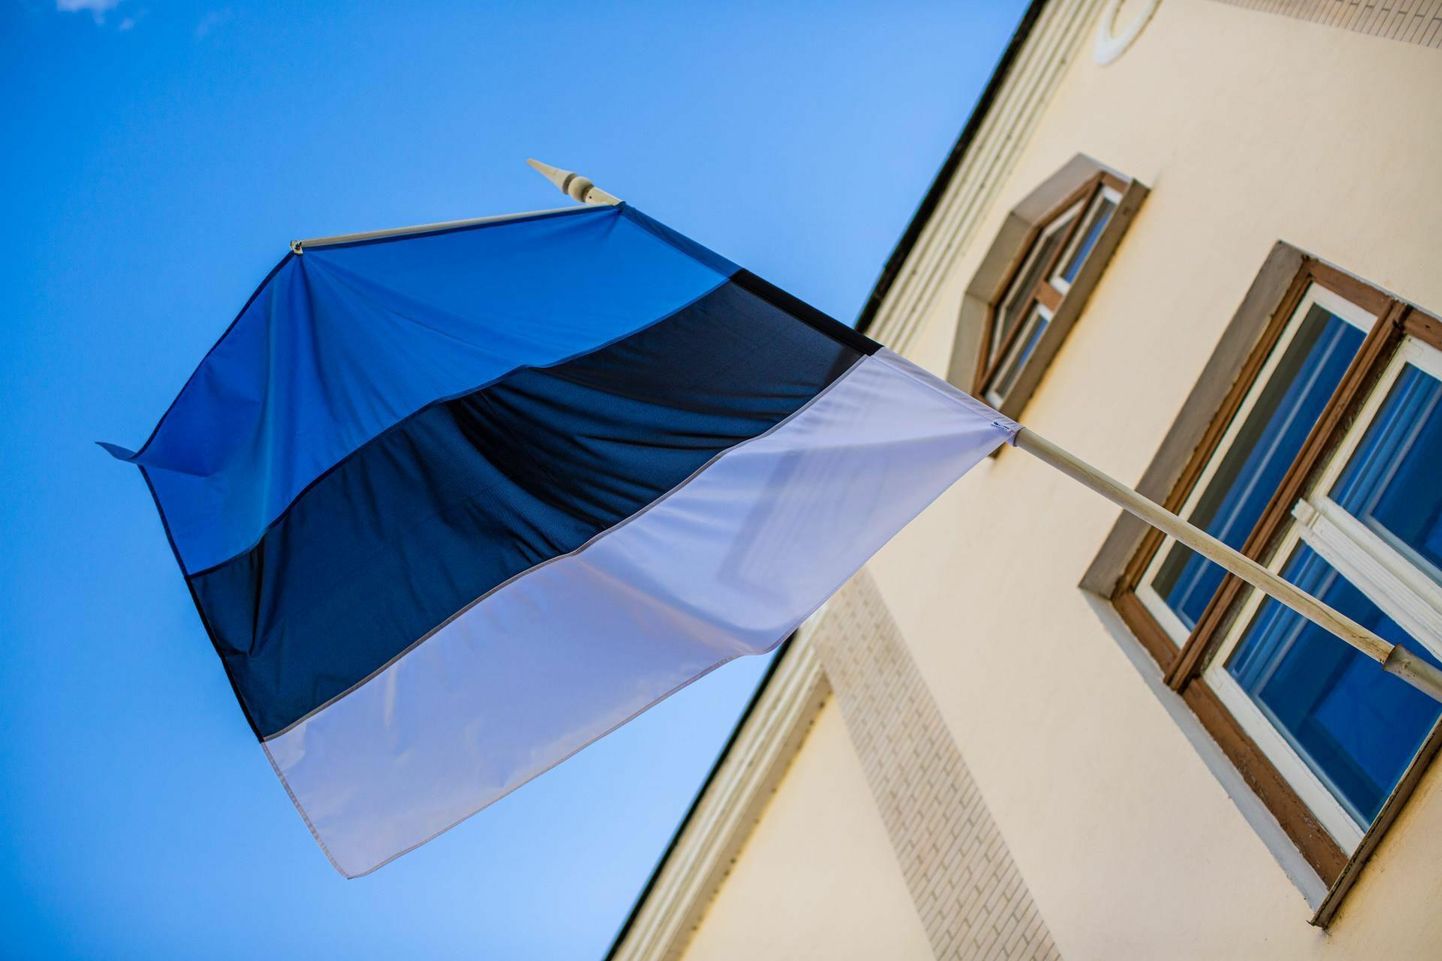 Oma eramaja seinale Eesti lipu heiskamine on kolmel päeval aastas soovituslik, aga siiski mitte kohustus.